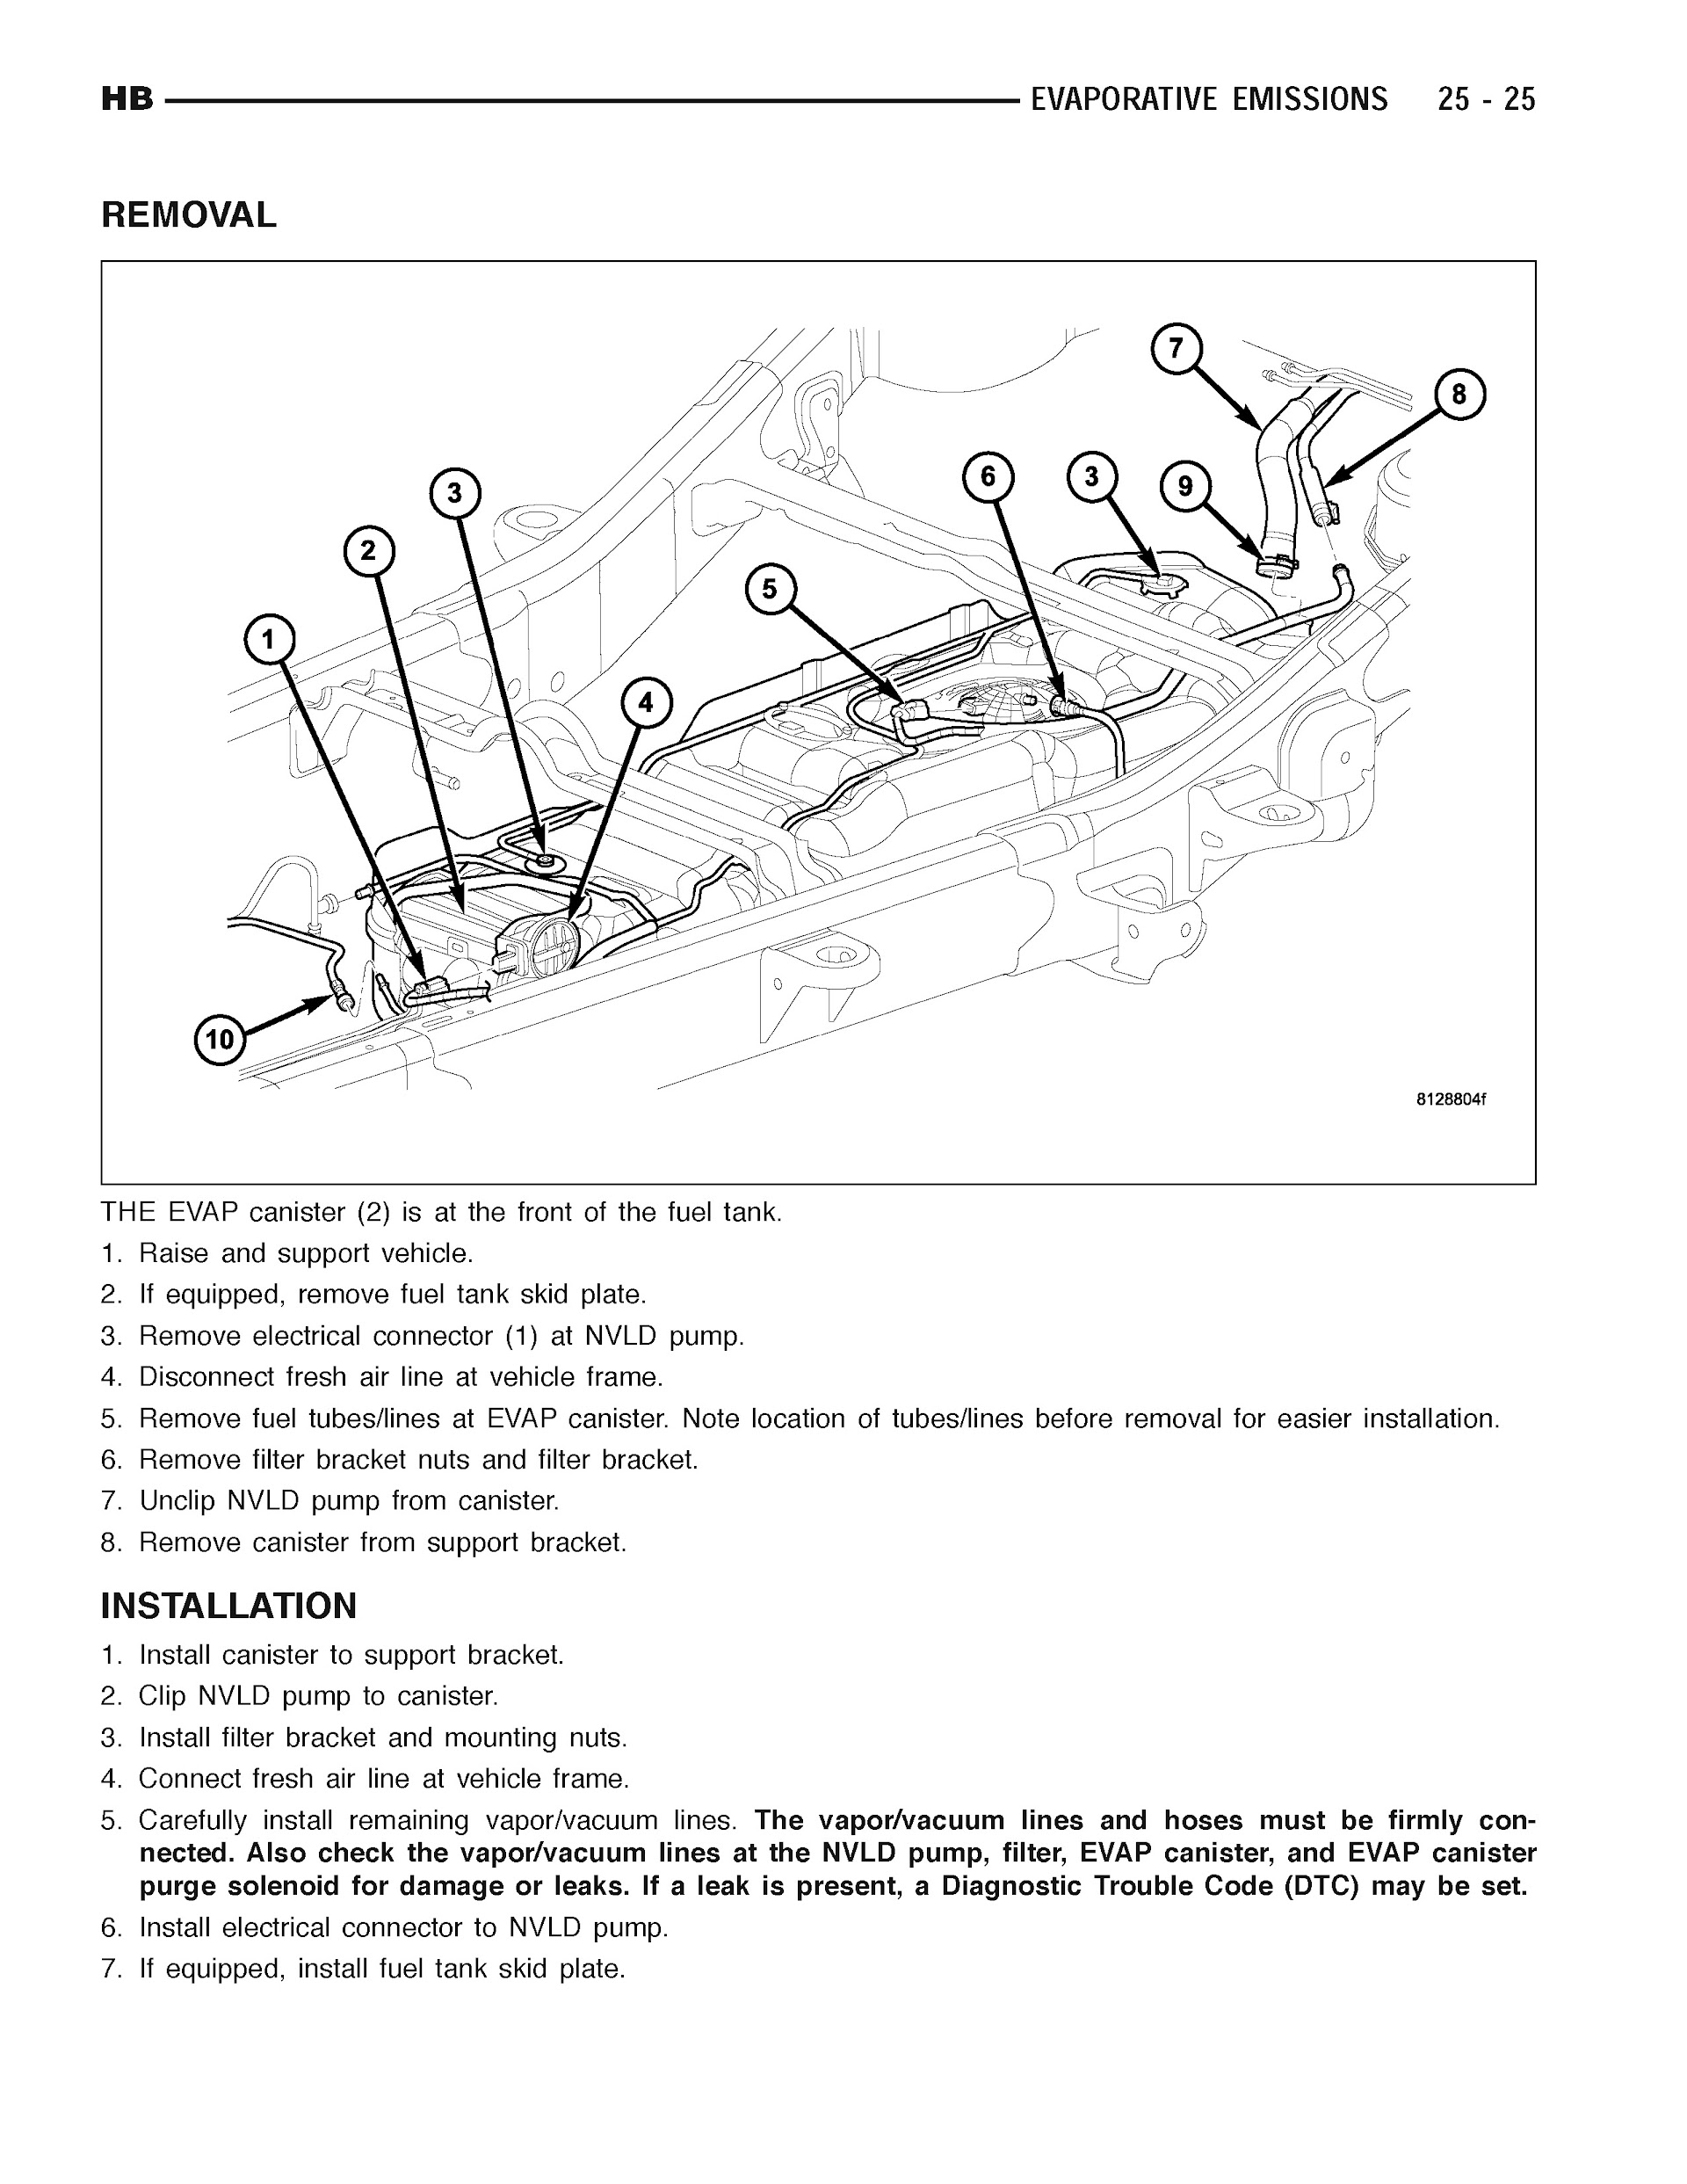 2005 Dodge Durango Repair Manual